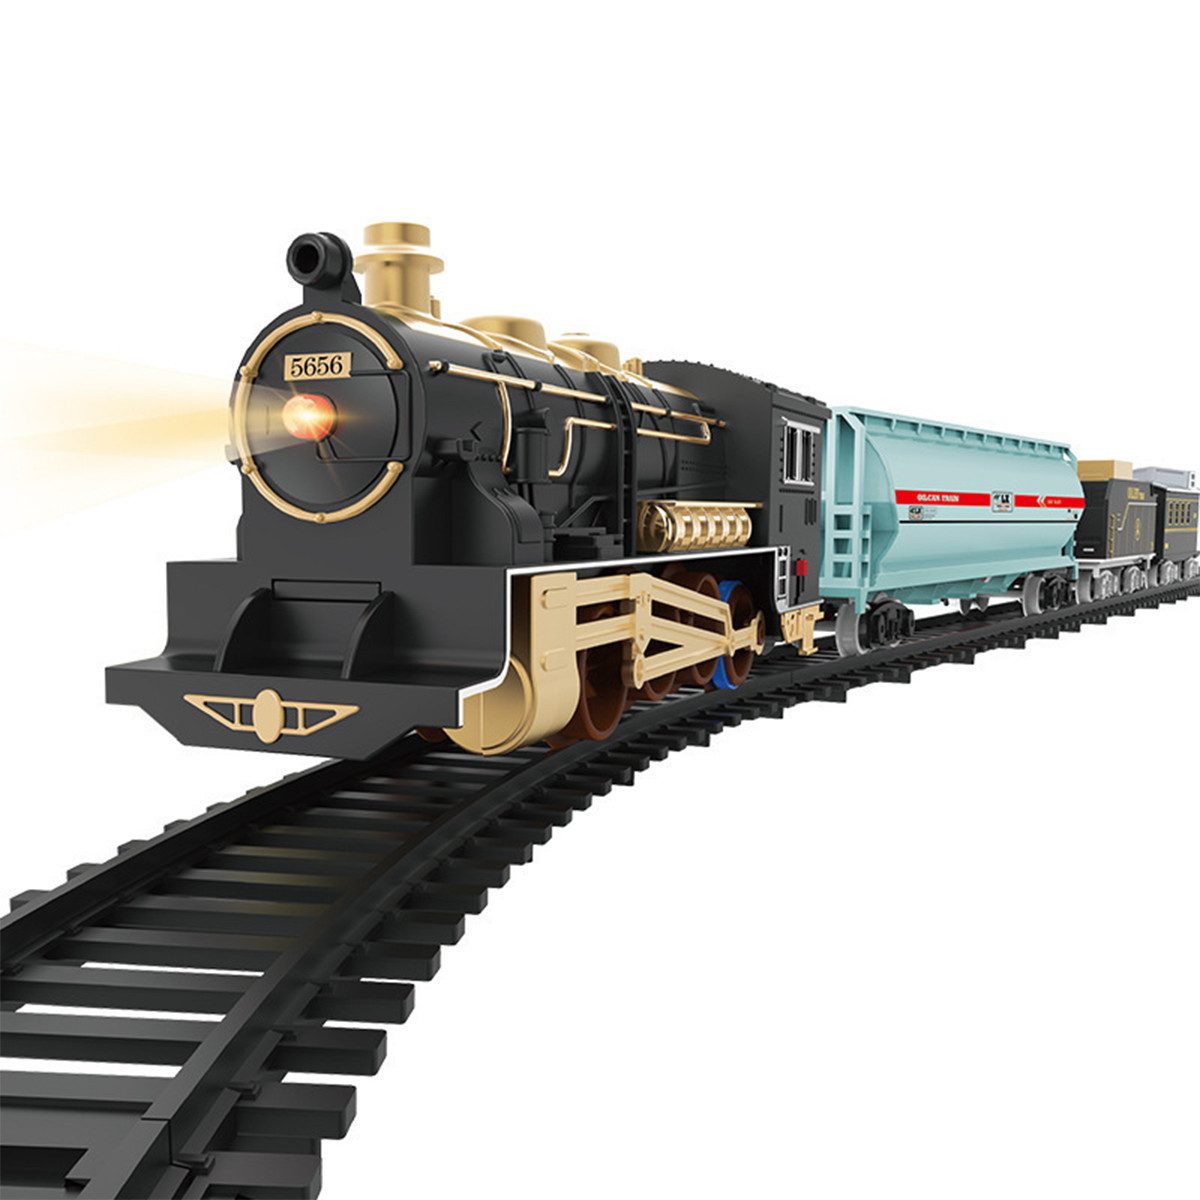 Welikera Spielzeug-Eisenbahn Spielzeugeisenbahn, Simulationsform leicht zu montieren